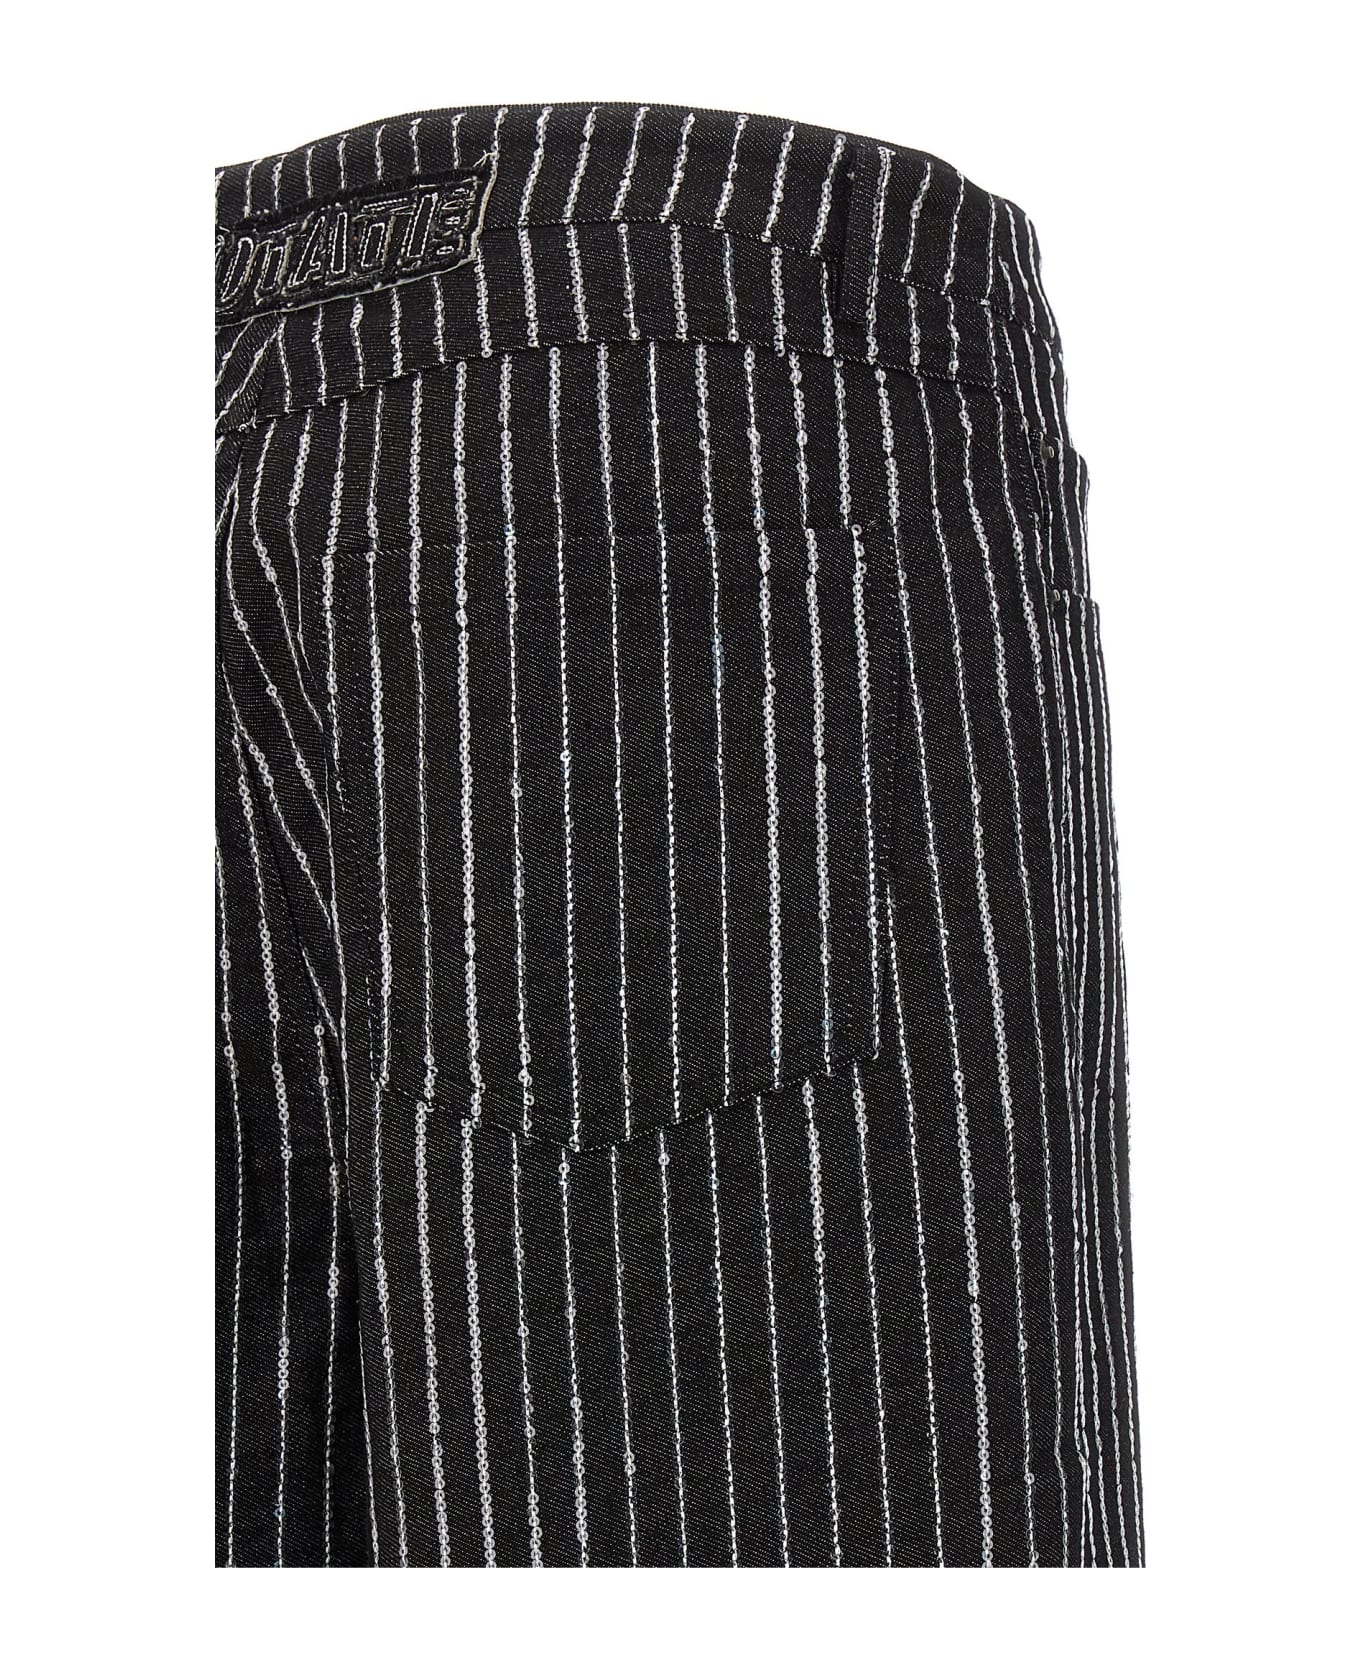 Rotate by Birger Christensen Sequin Pinstripe Jeans - Black  